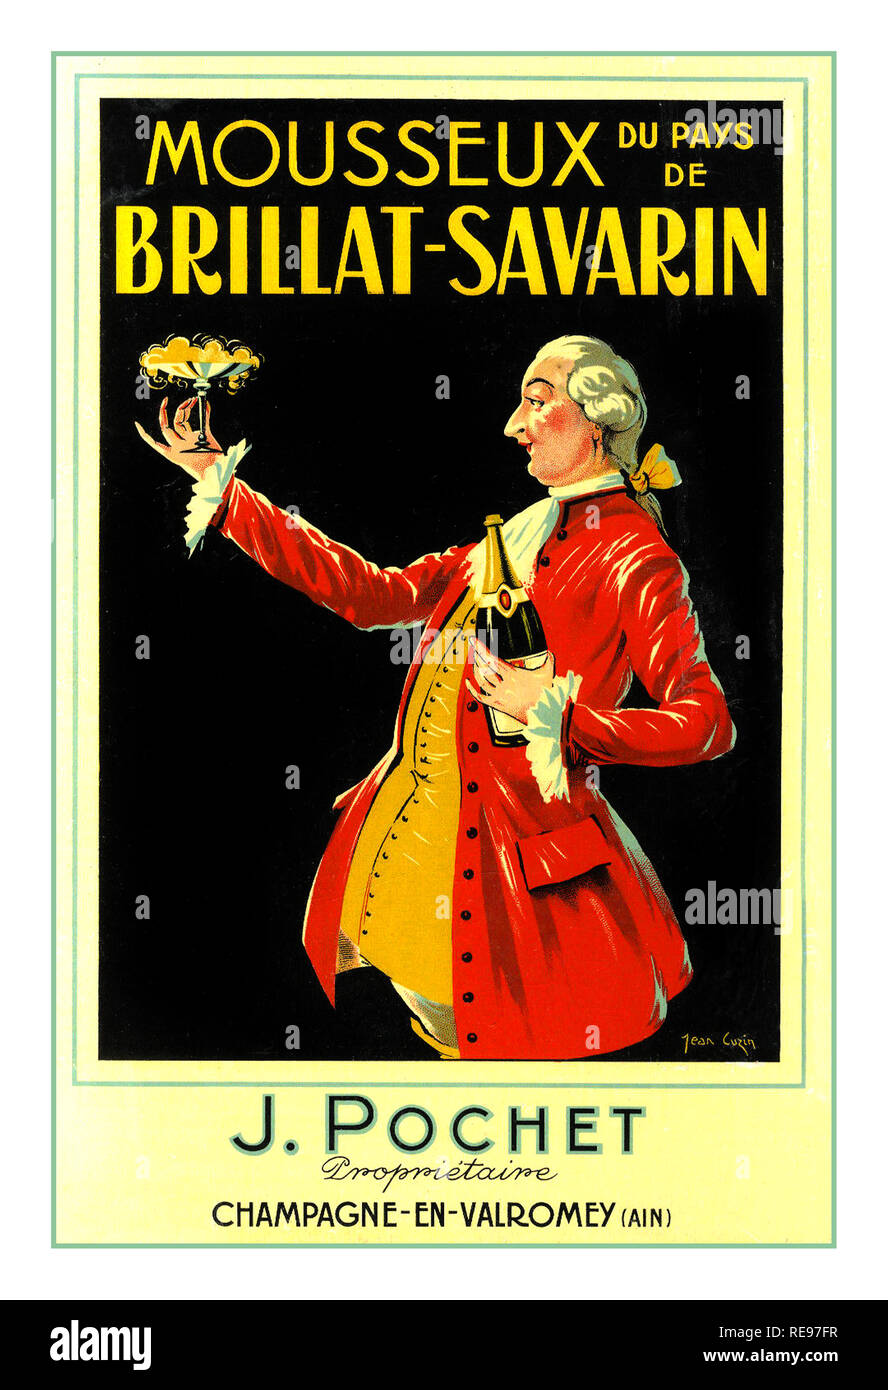 Vintage 1900 Champagne Poster J Pochet Champagne-En Valromey AIN Mousseux du Pays de Brillat-Savarin France Banque D'Images